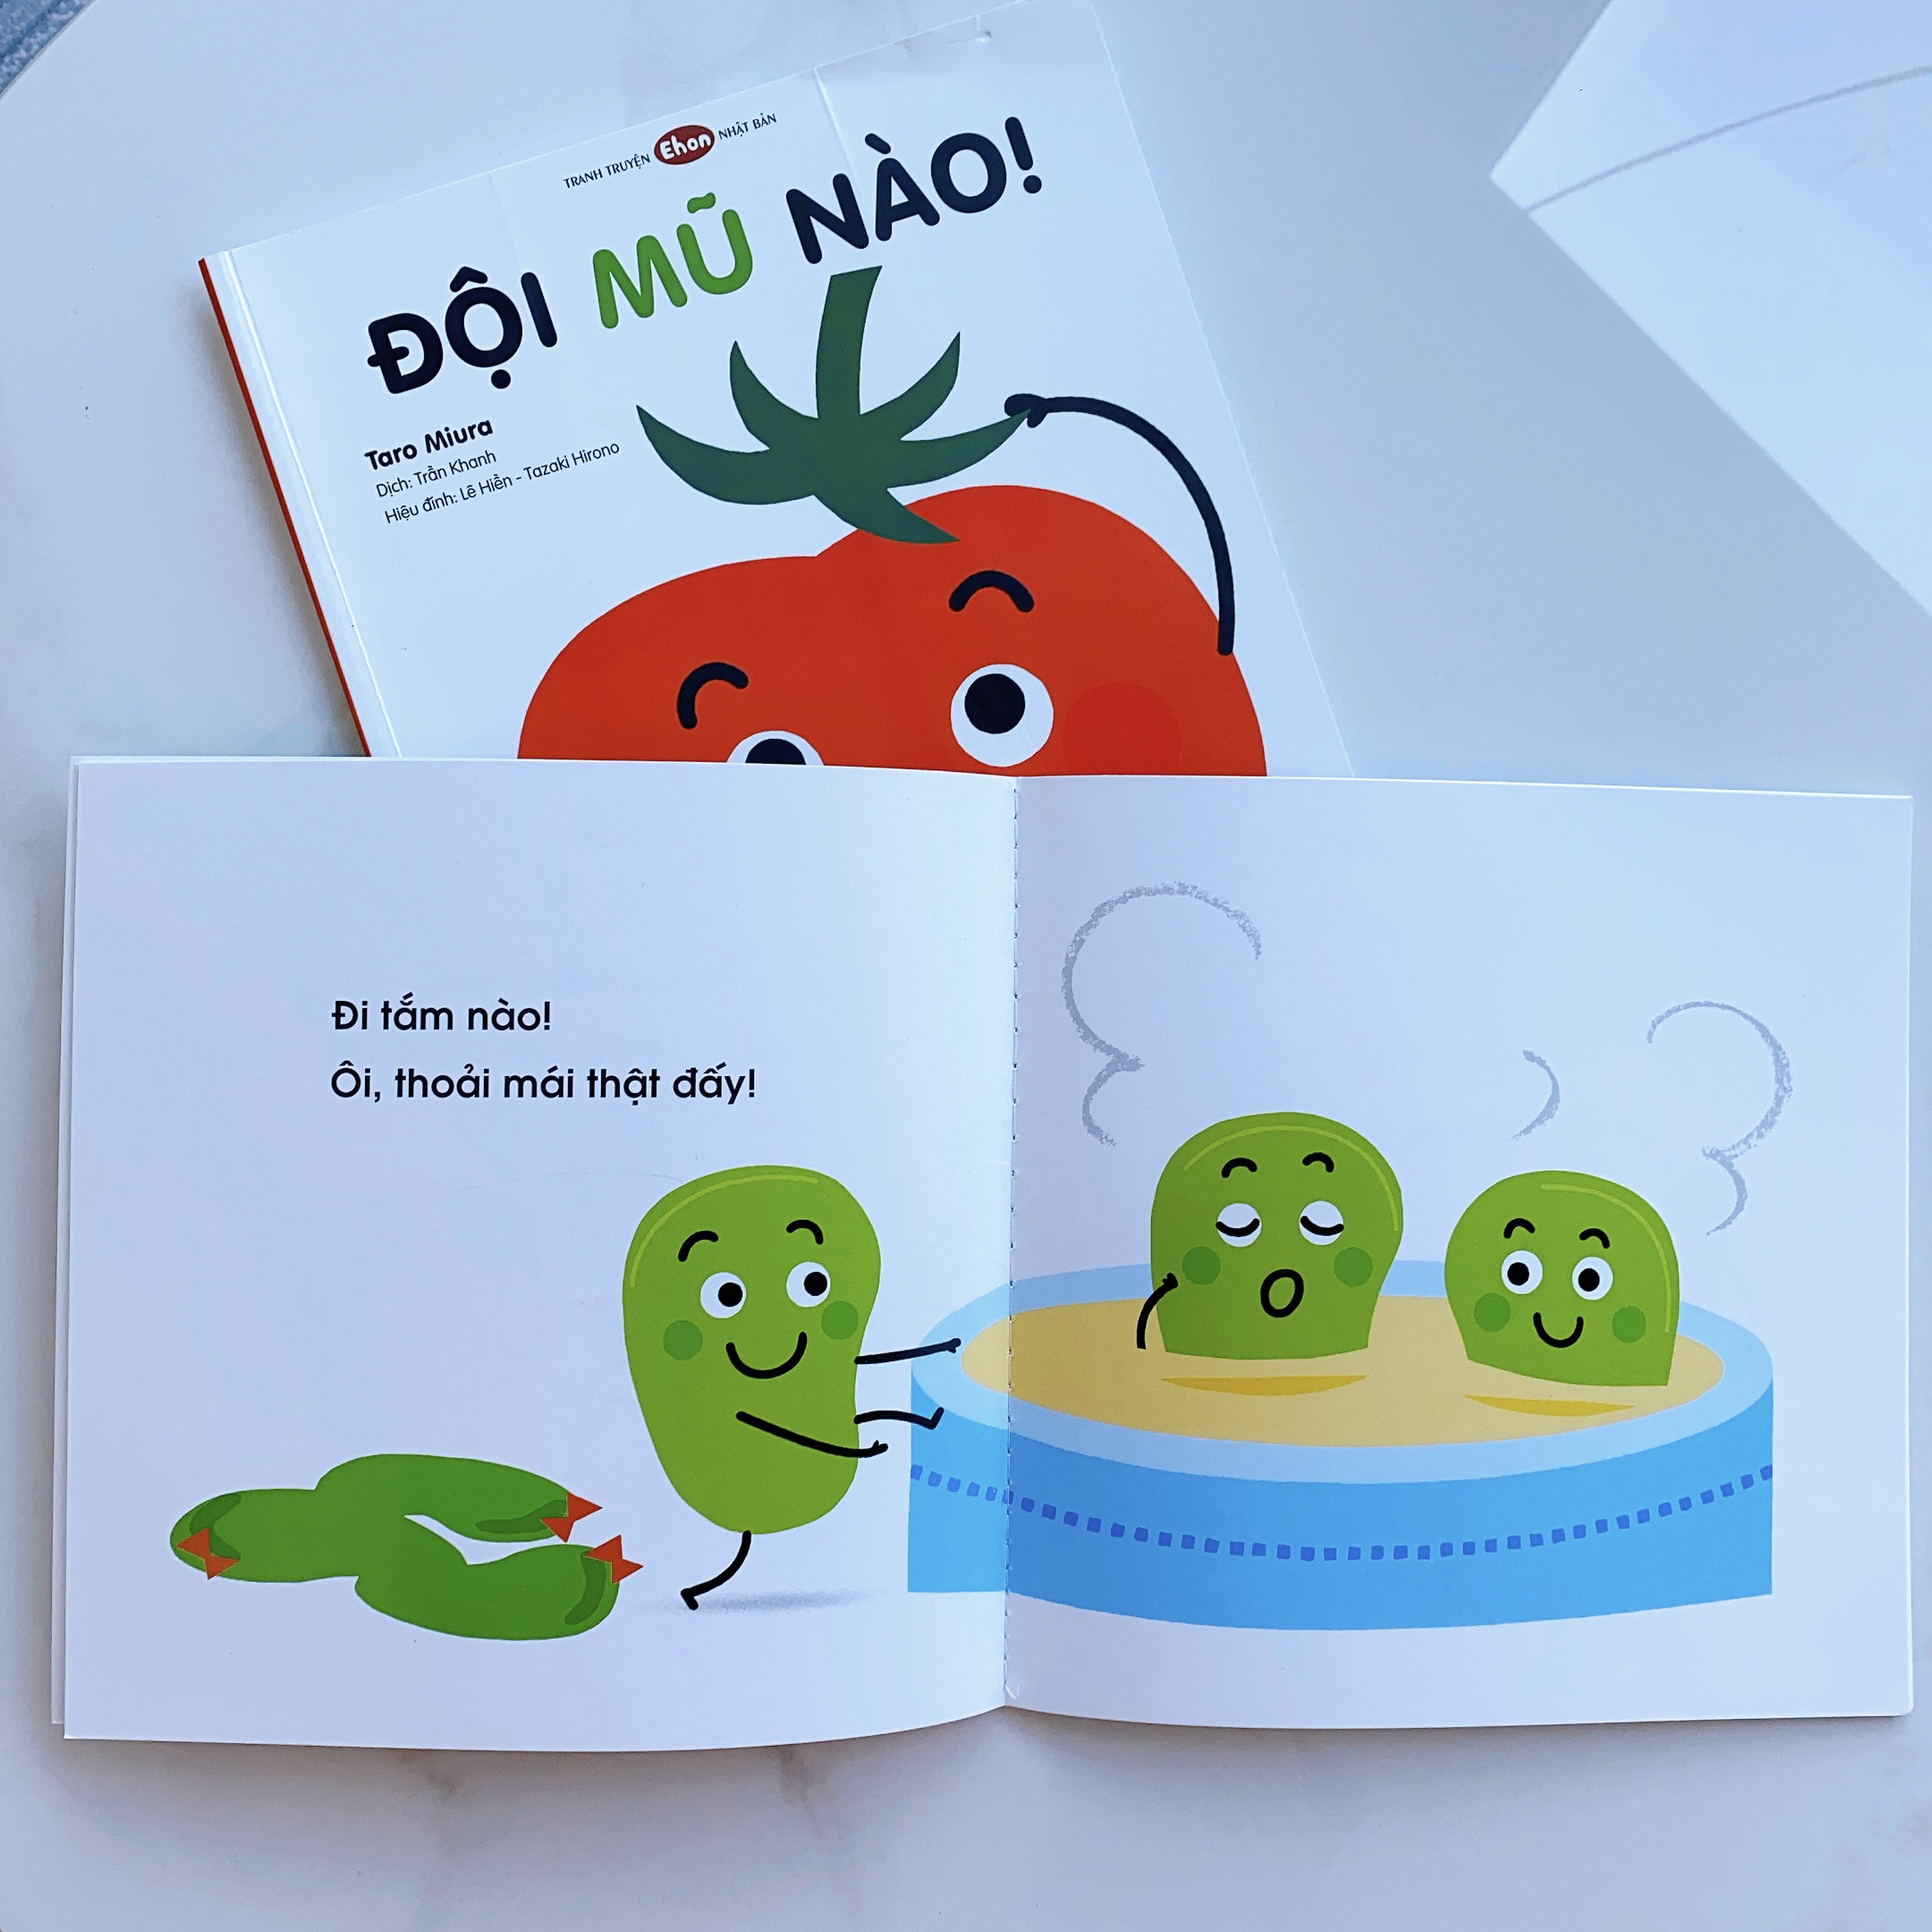 Ehon - Làm quen với sách cho bé 0-2 tuổi - Combo "Cùng làm nào" Bao gồm "Đi tắm nào" và "Đội mũ nào"